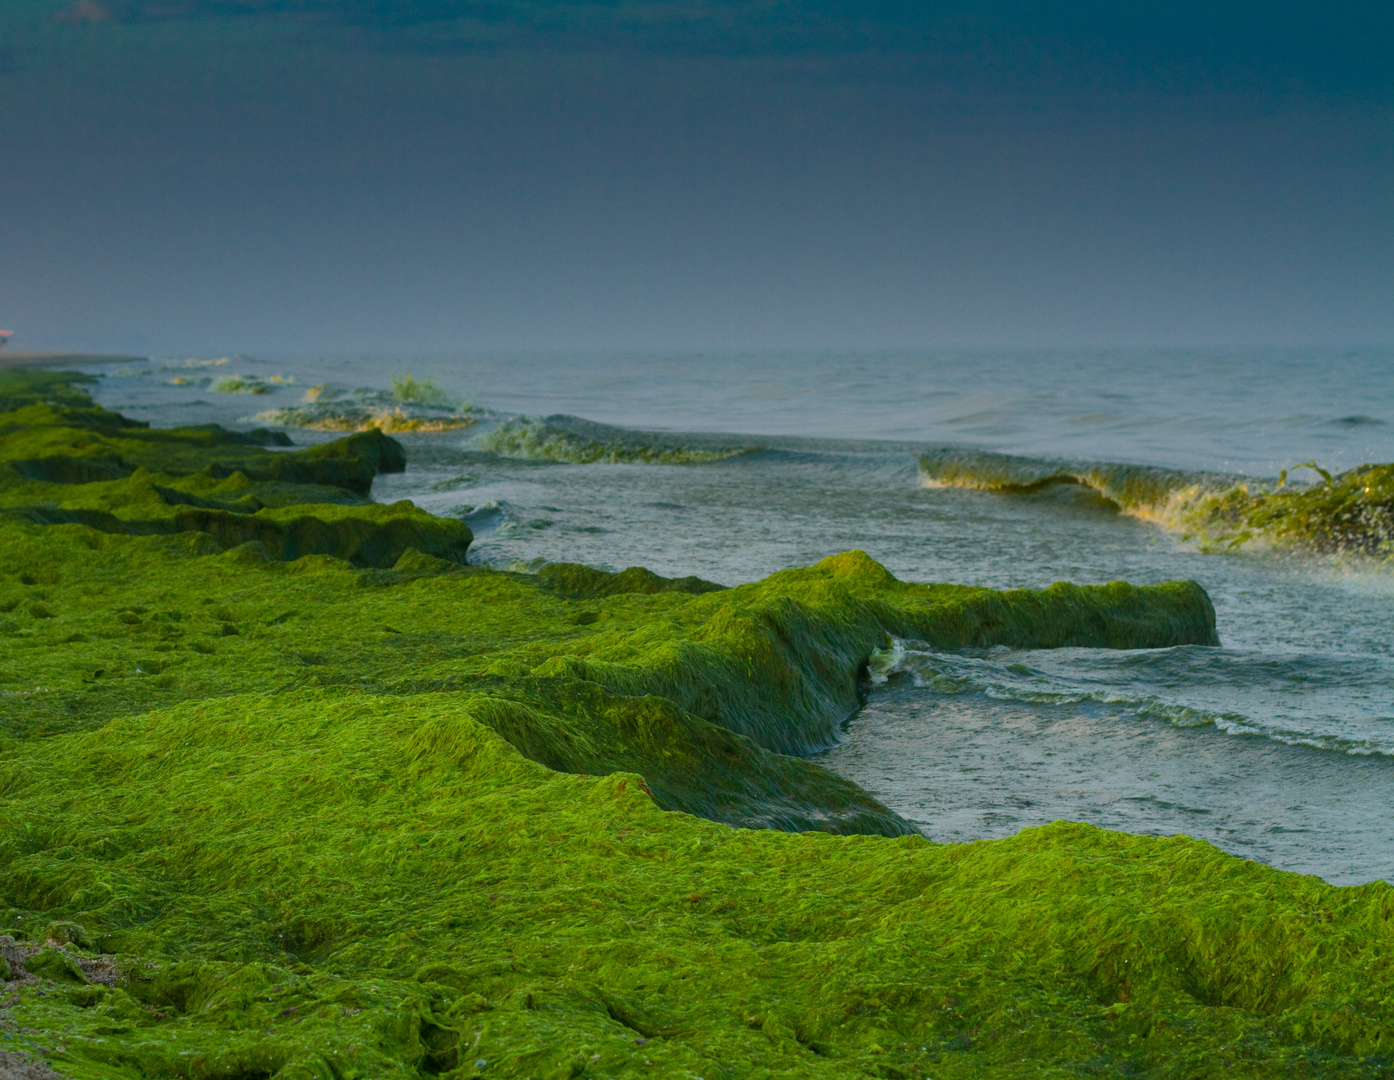 green sea